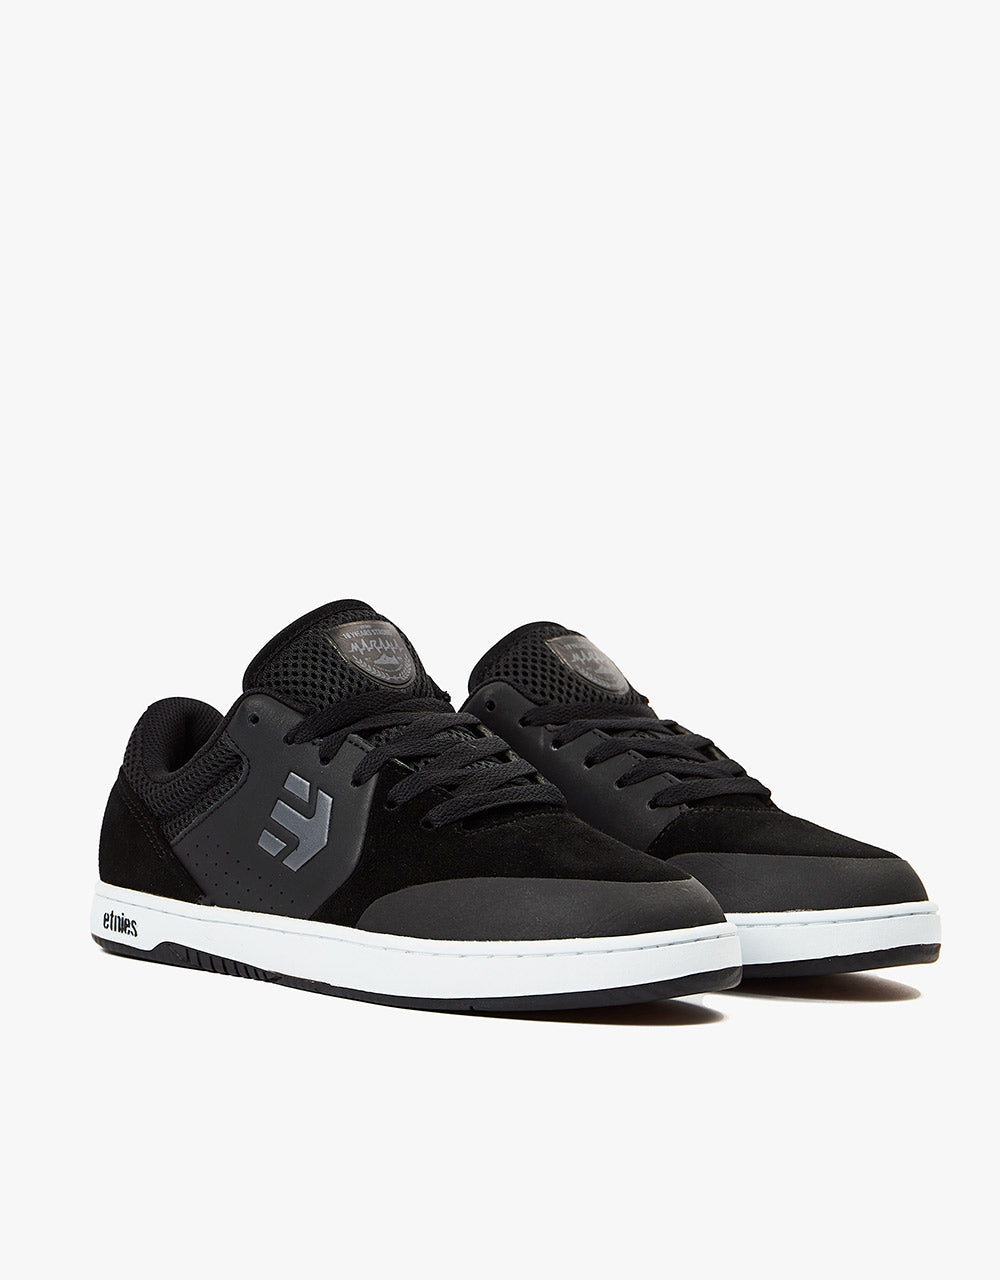 Etnies Marana OG Skate Shoes - Black/White/Gum